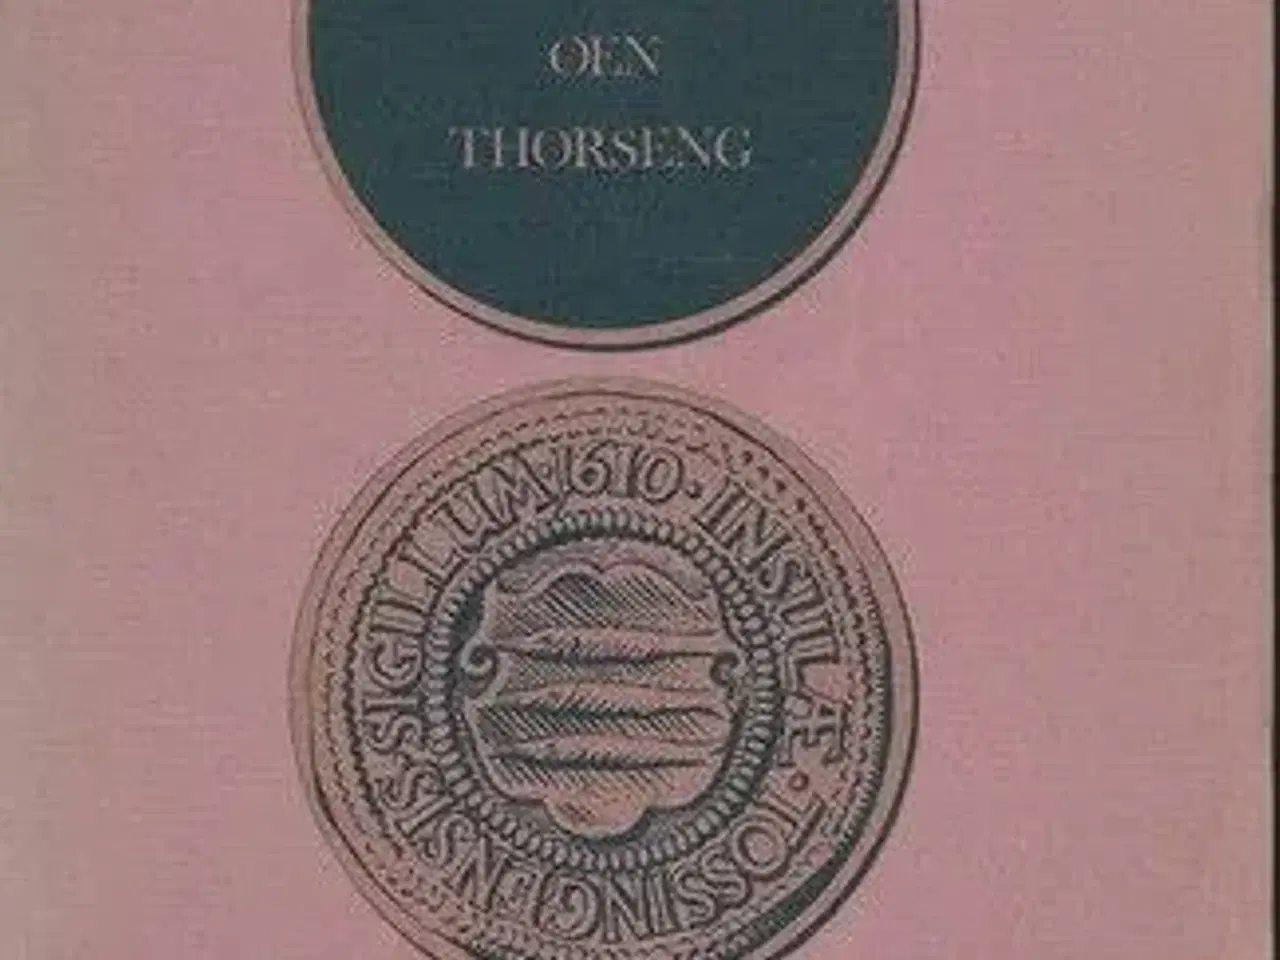 Billede 1 - Beskrivelse over øen Thorseng